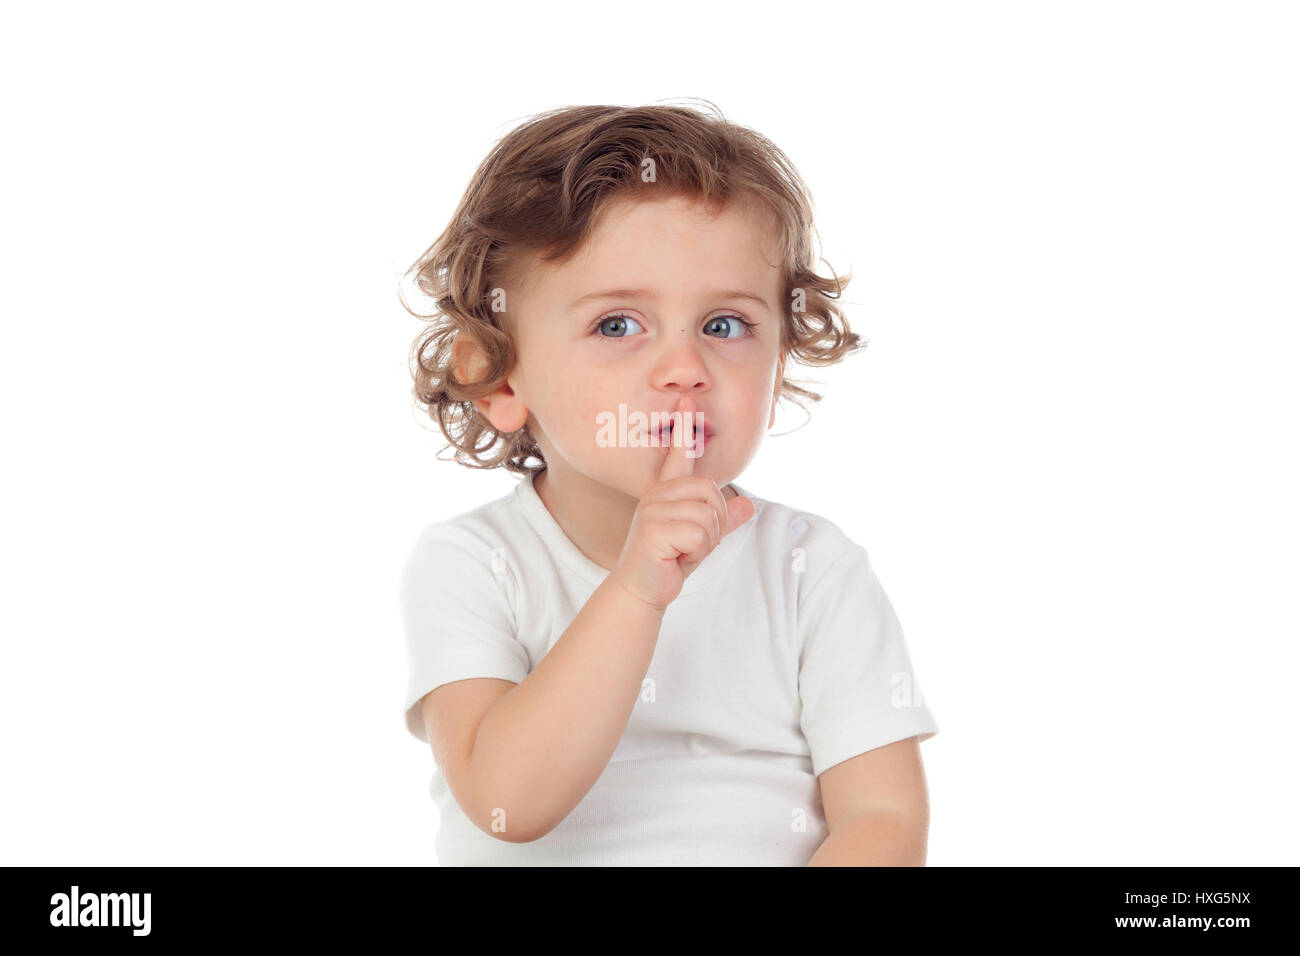 Carino baby ha messo l'indice per labbra come segno di silenzio, isolato su sfondo bianco Foto Stock